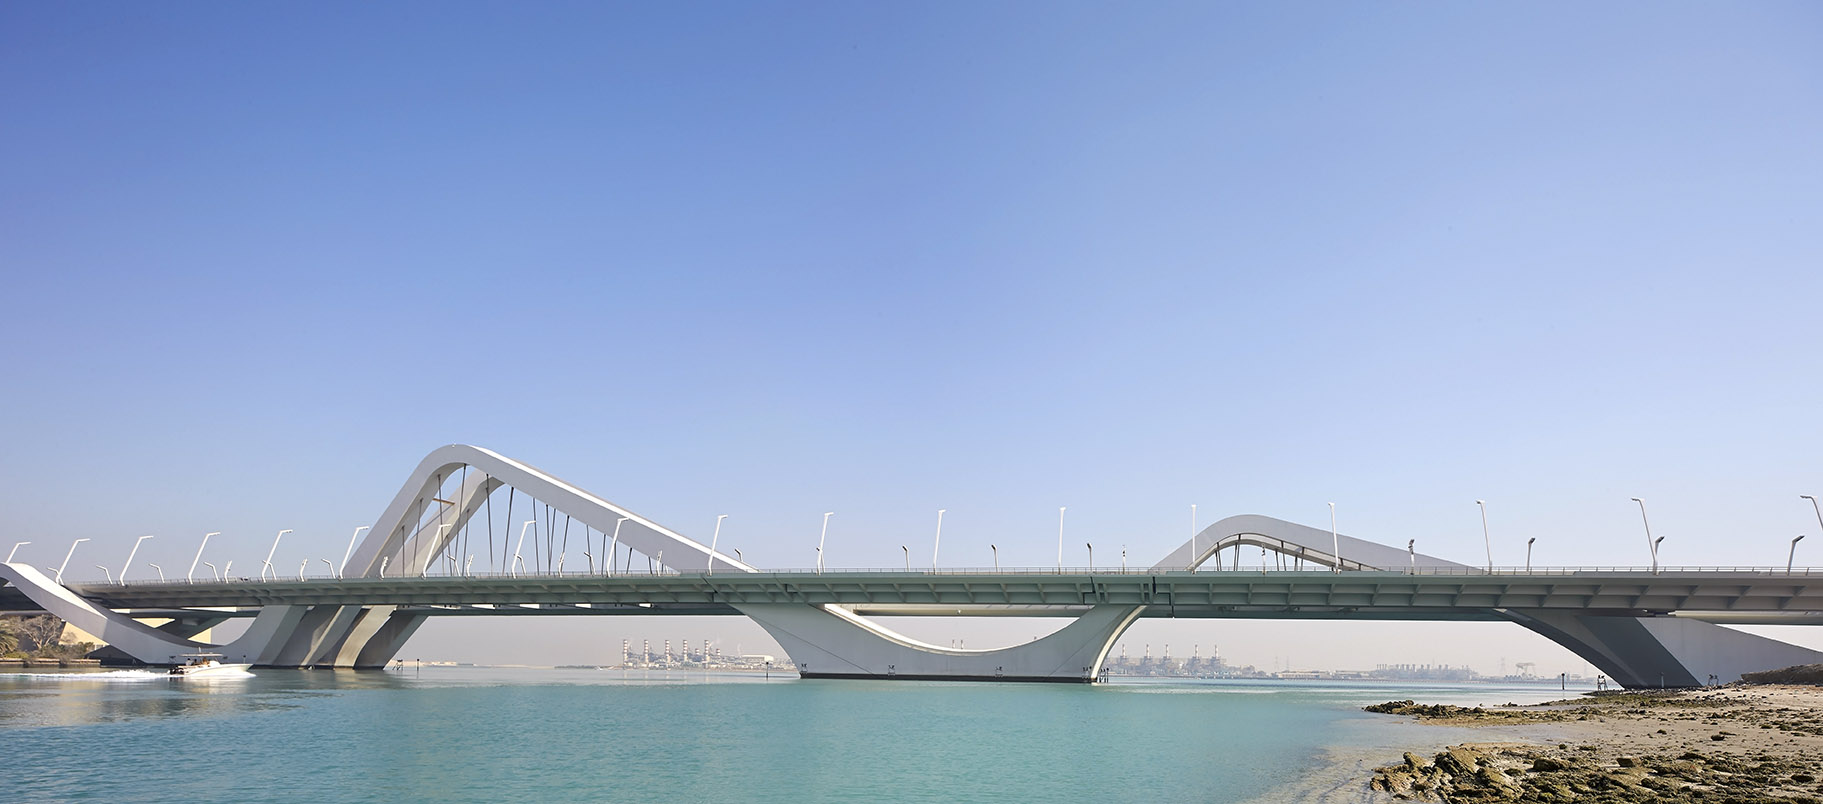 zaha-hadid-seikh-zayed-bridge-1.jpg